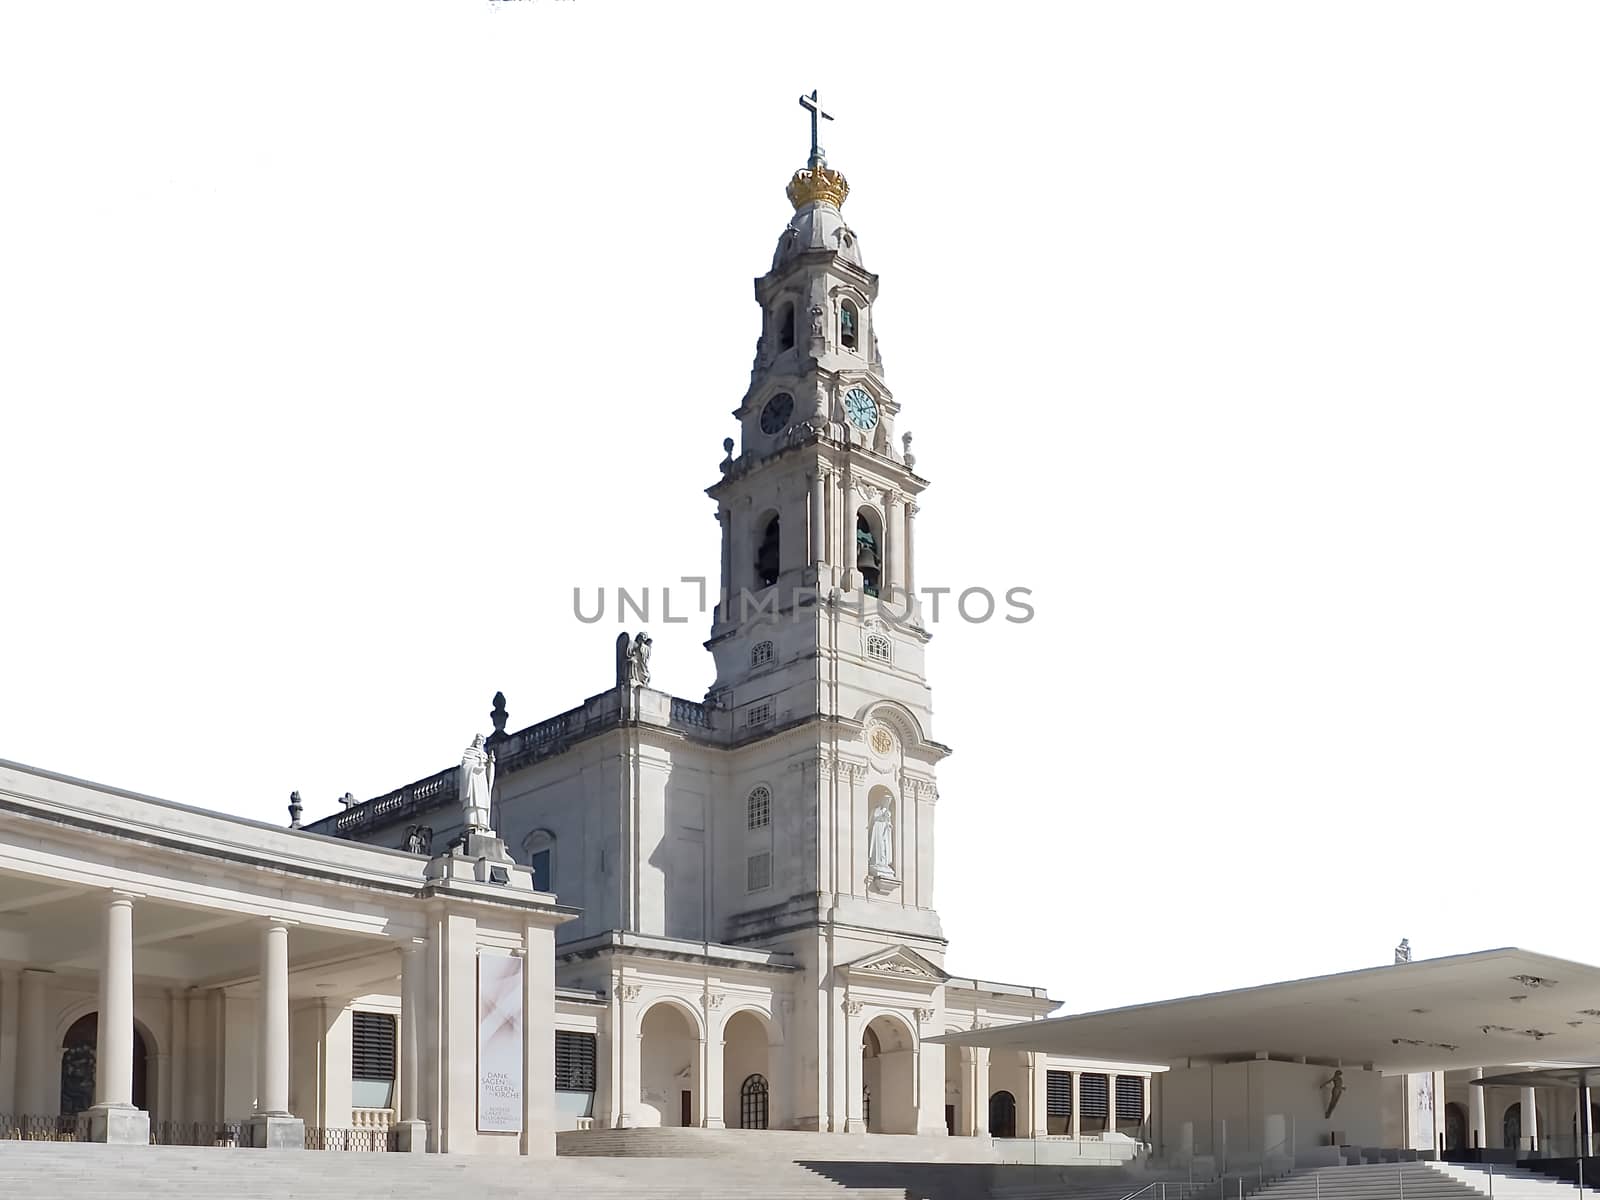 Church of Fatima in the Centro region of Portugal